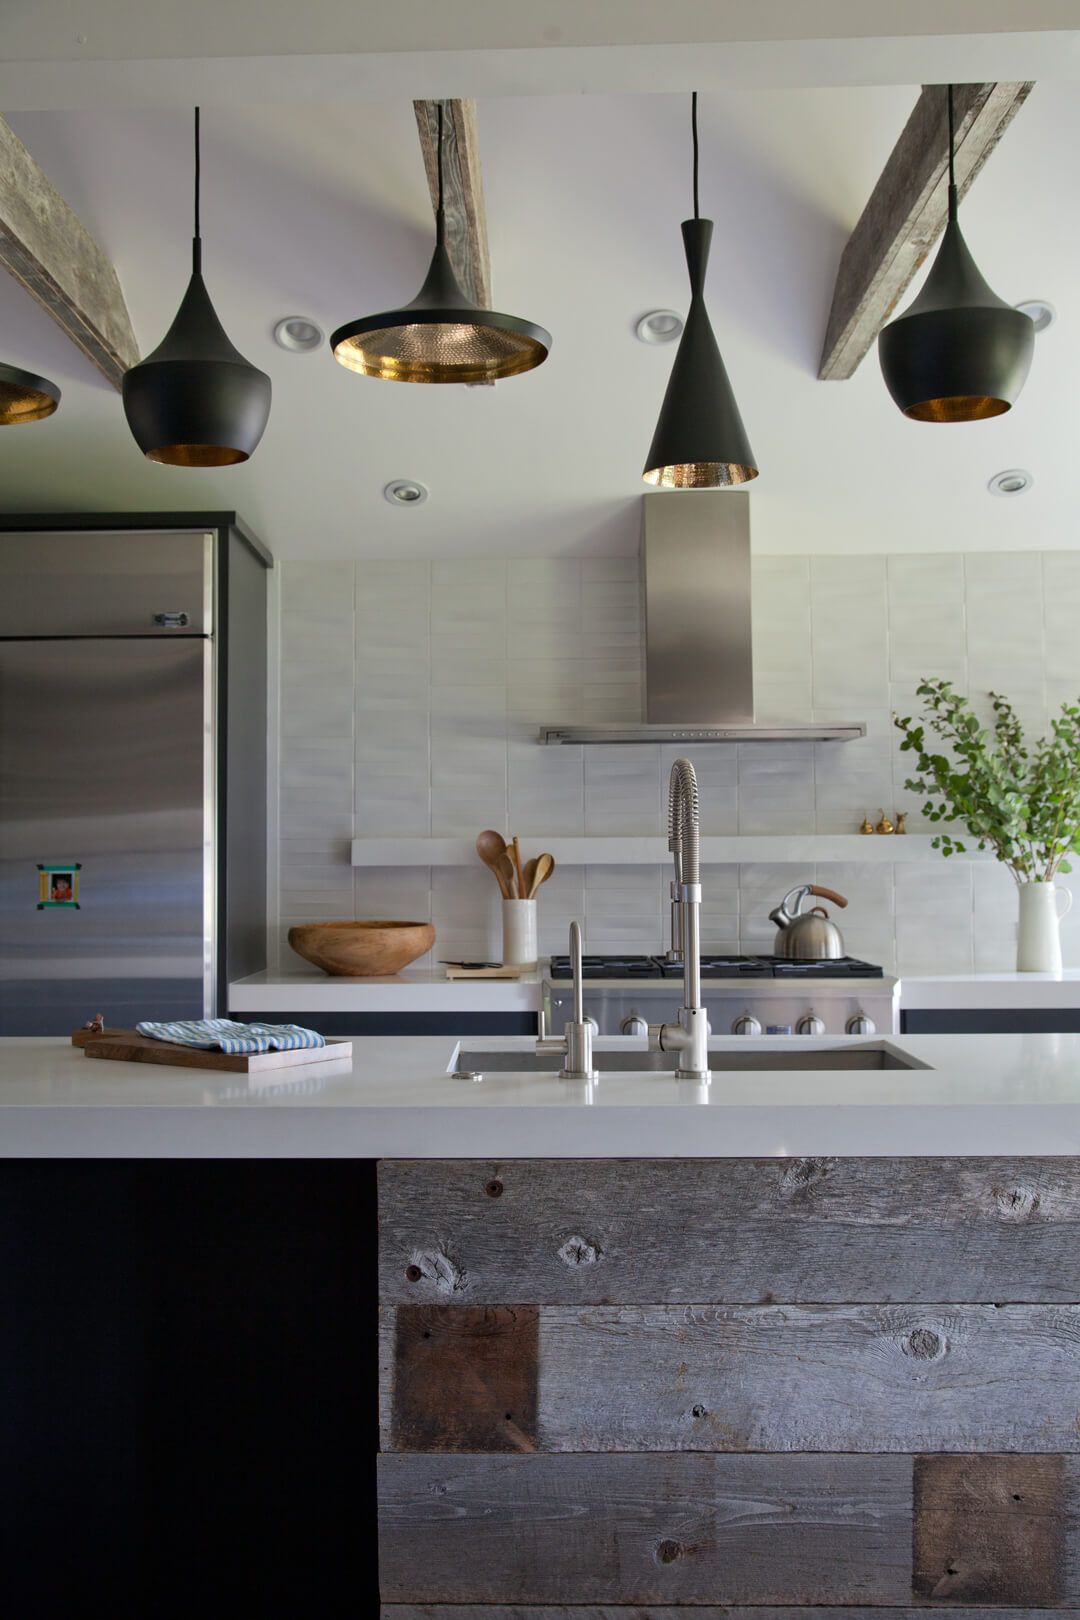 35 Best Kitchen Lighting Ideas - Modern Light Fixtures for Home ...